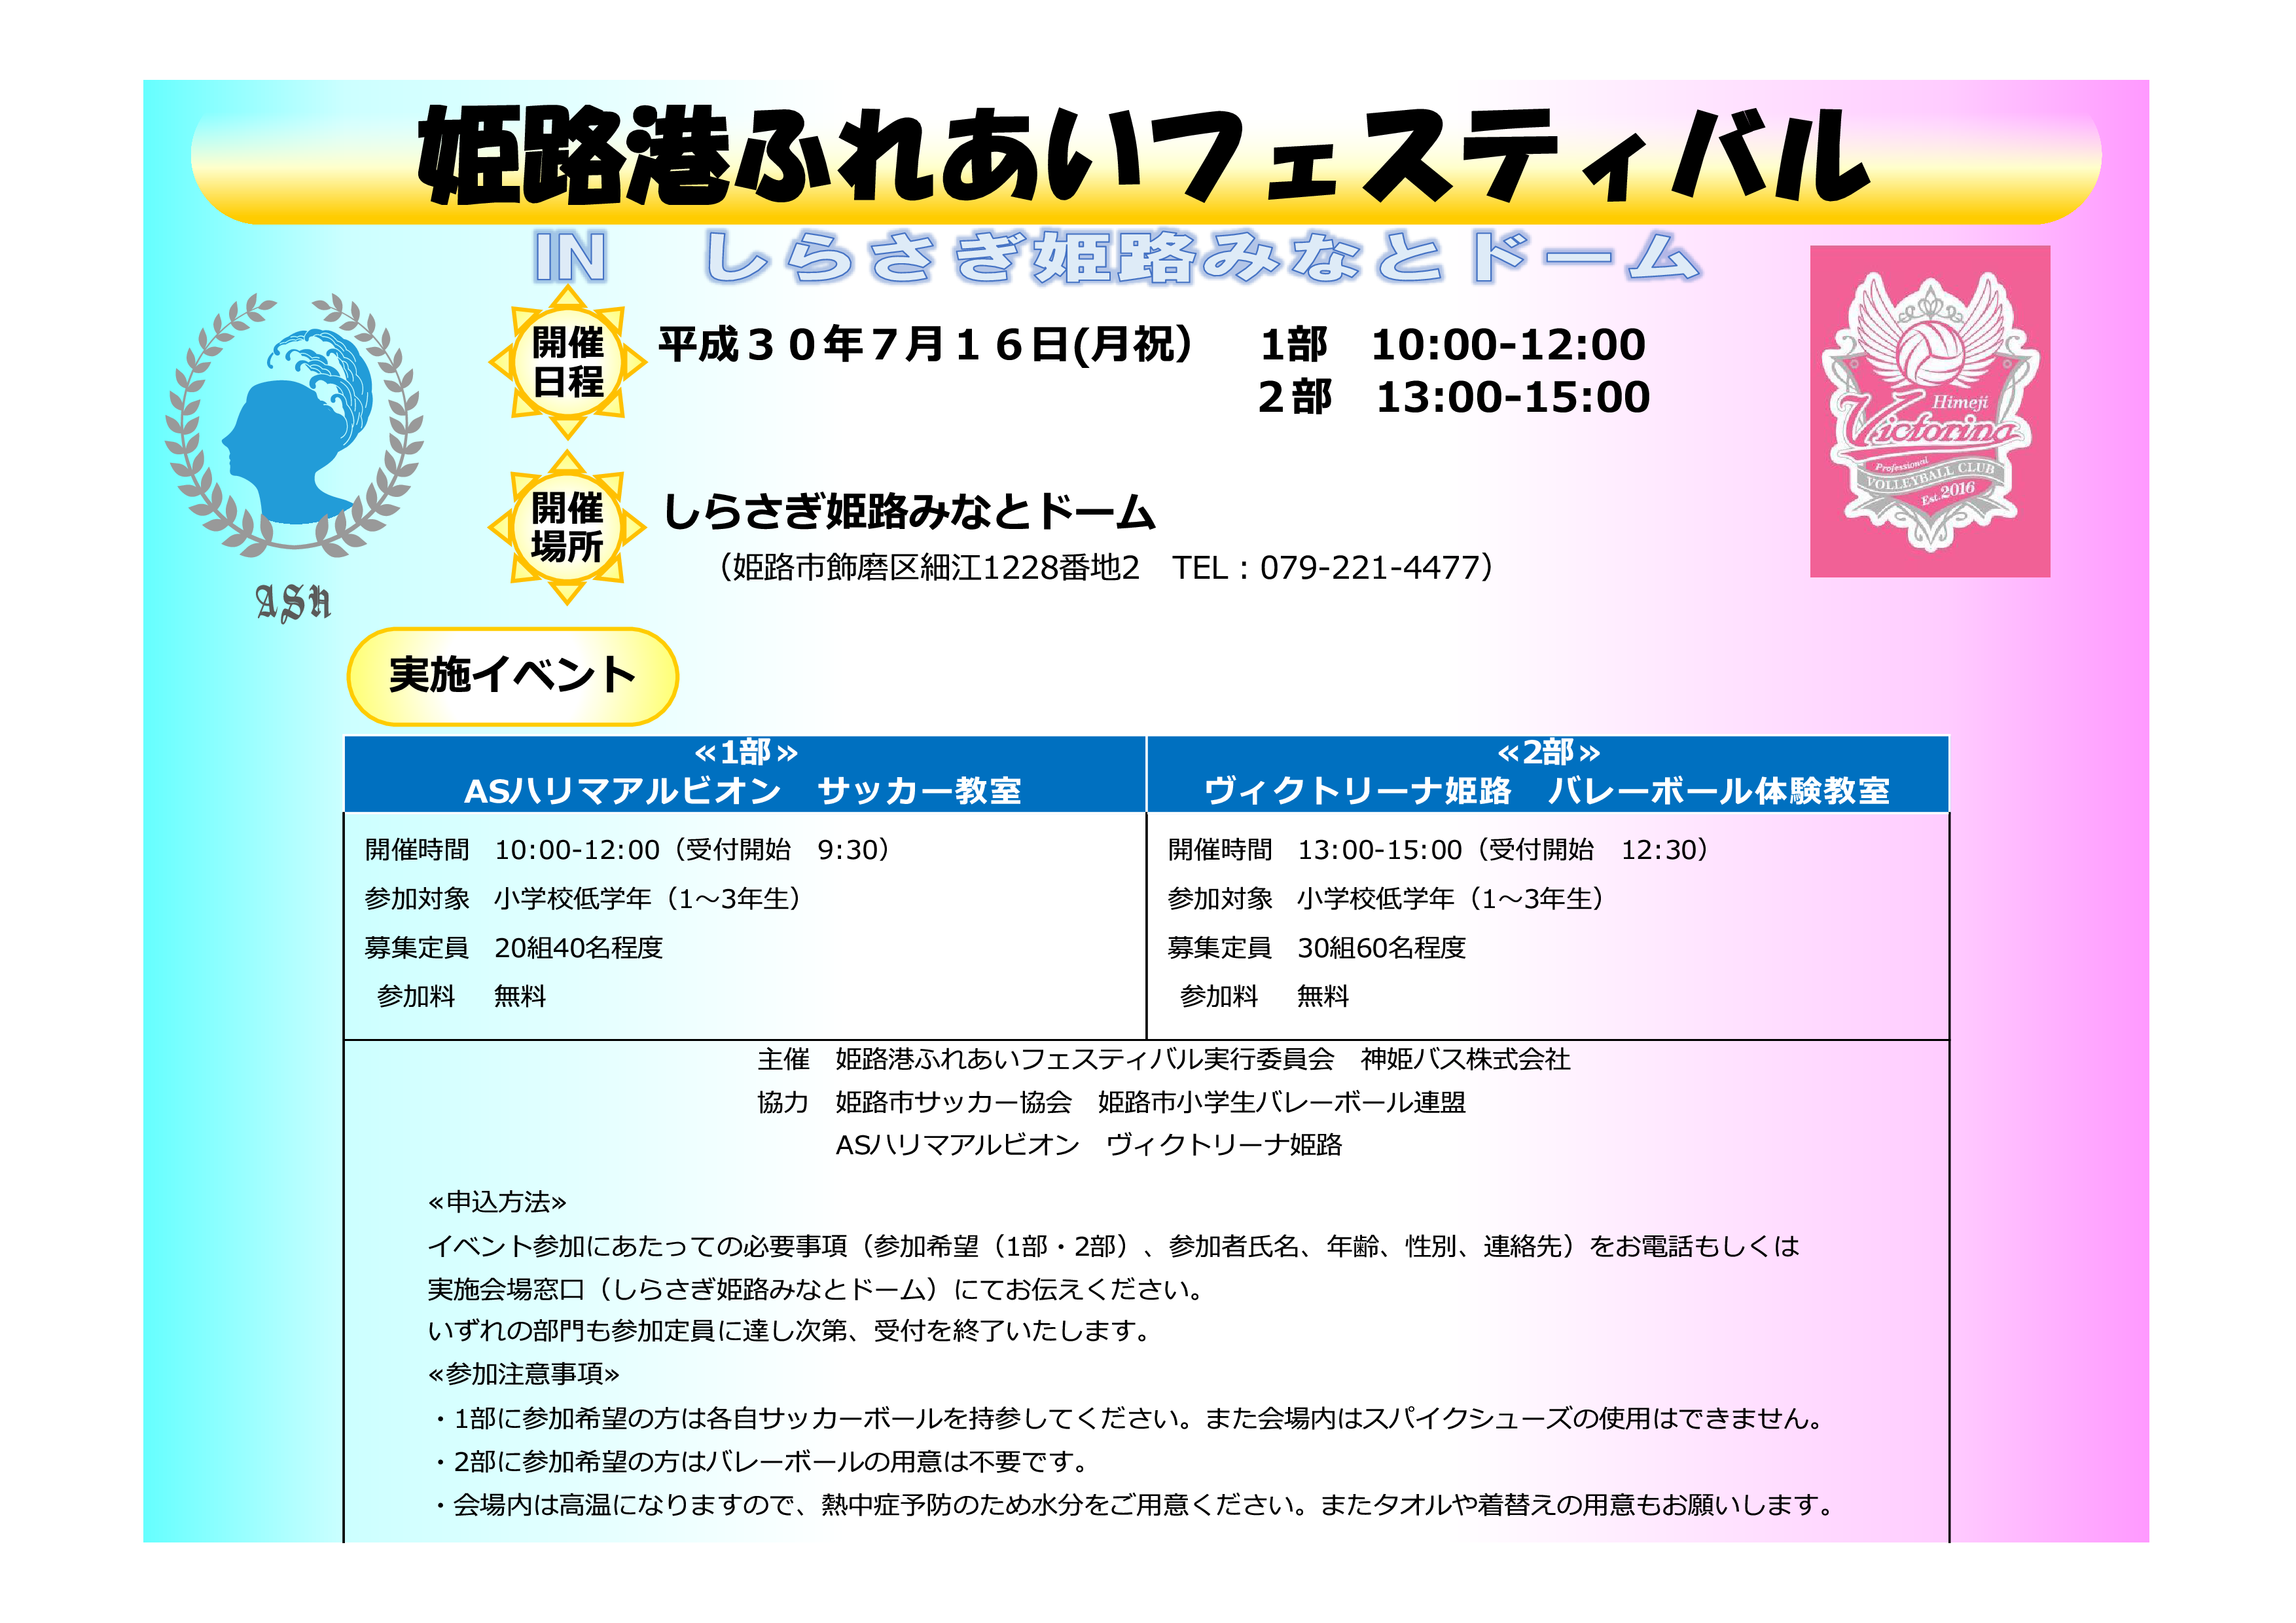 7 16 月祝 姫路港ふれあいフェスティバル しらさぎ姫路みなとドーム開催について 白鷺ｆｃ